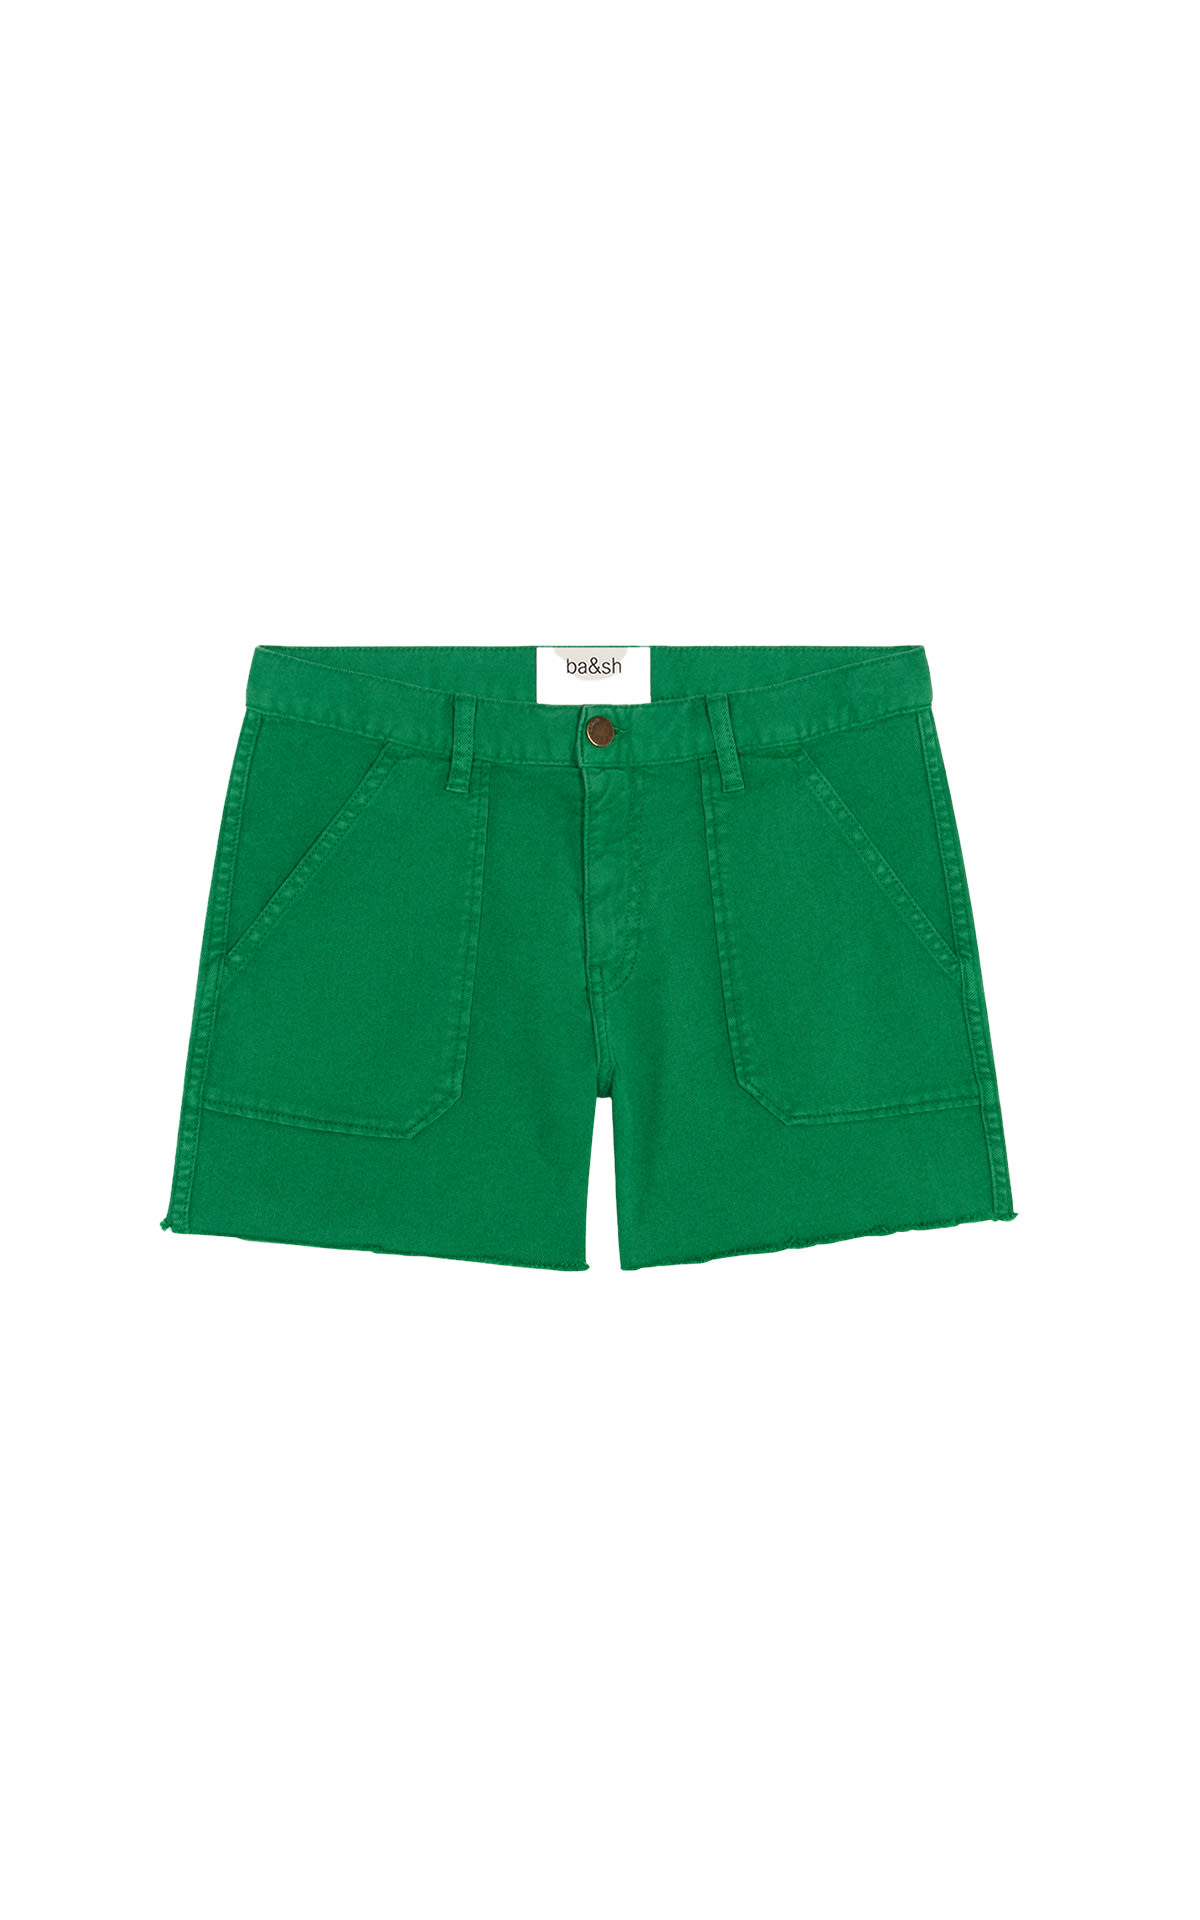 Shorts verdes ba&sh